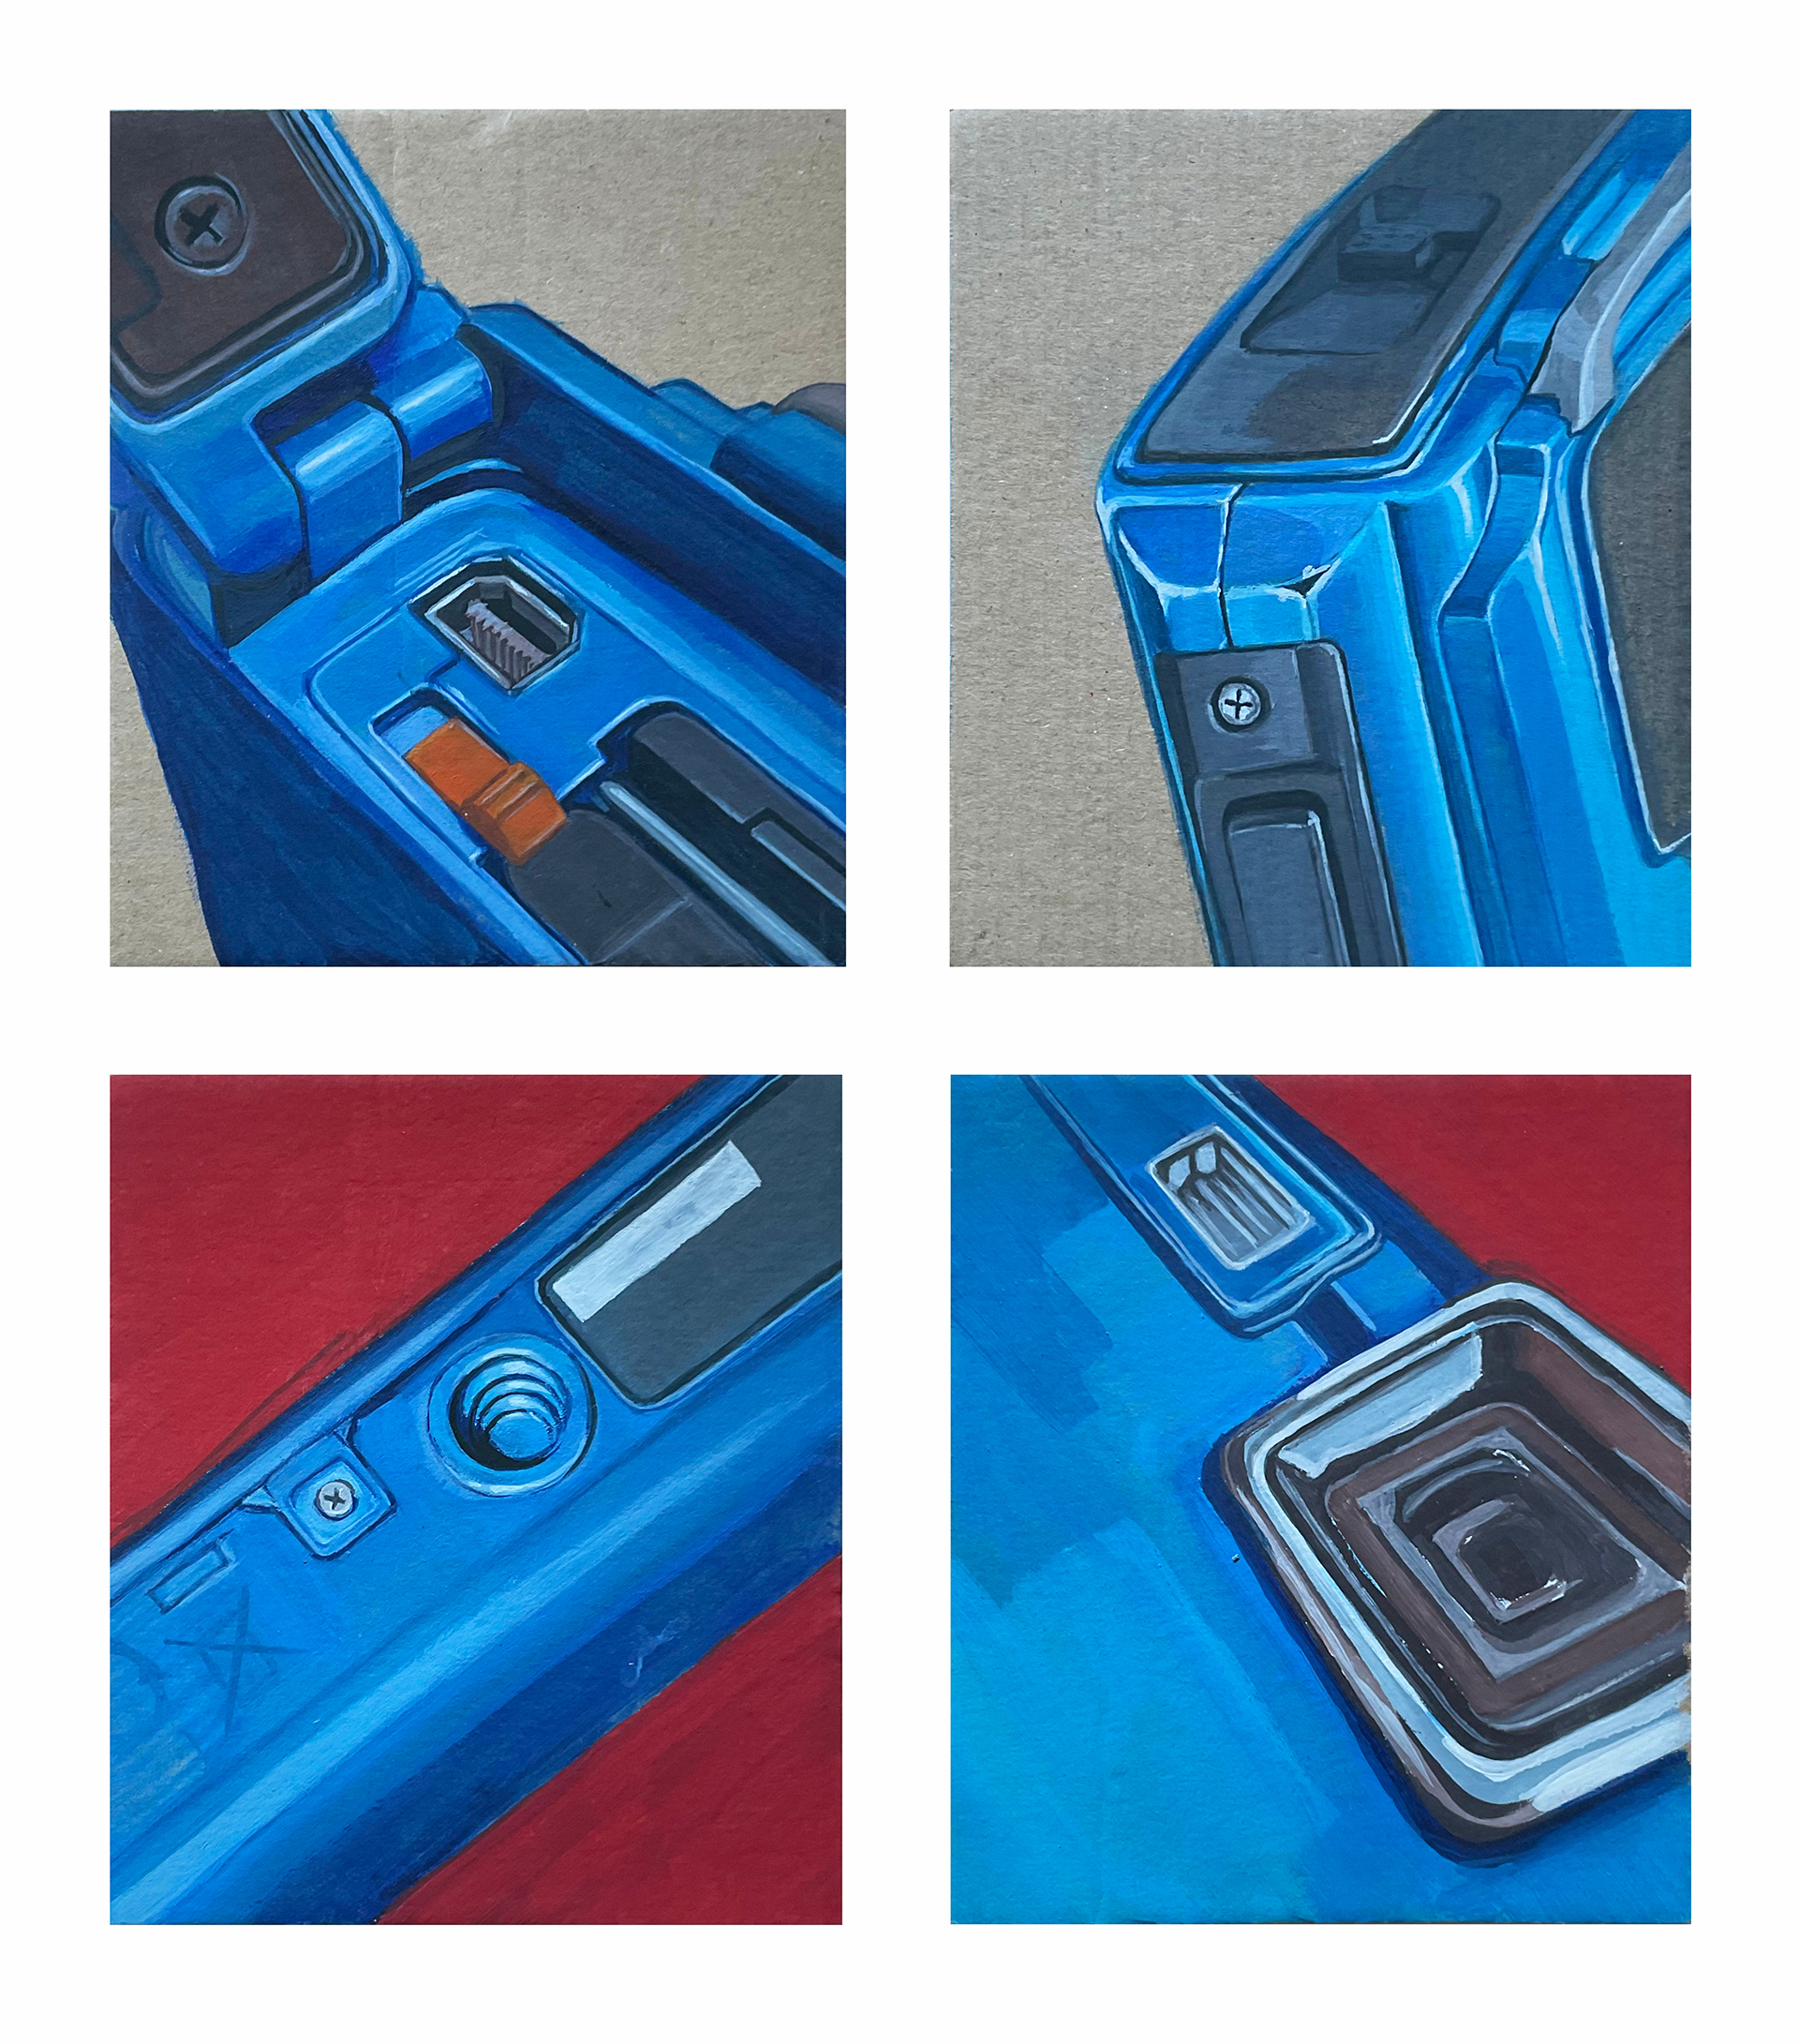 Zdjęcie przedstawia cztery prace z detalami aparatu fotograficznego w kolorze szaro-bordowo niebieskim 